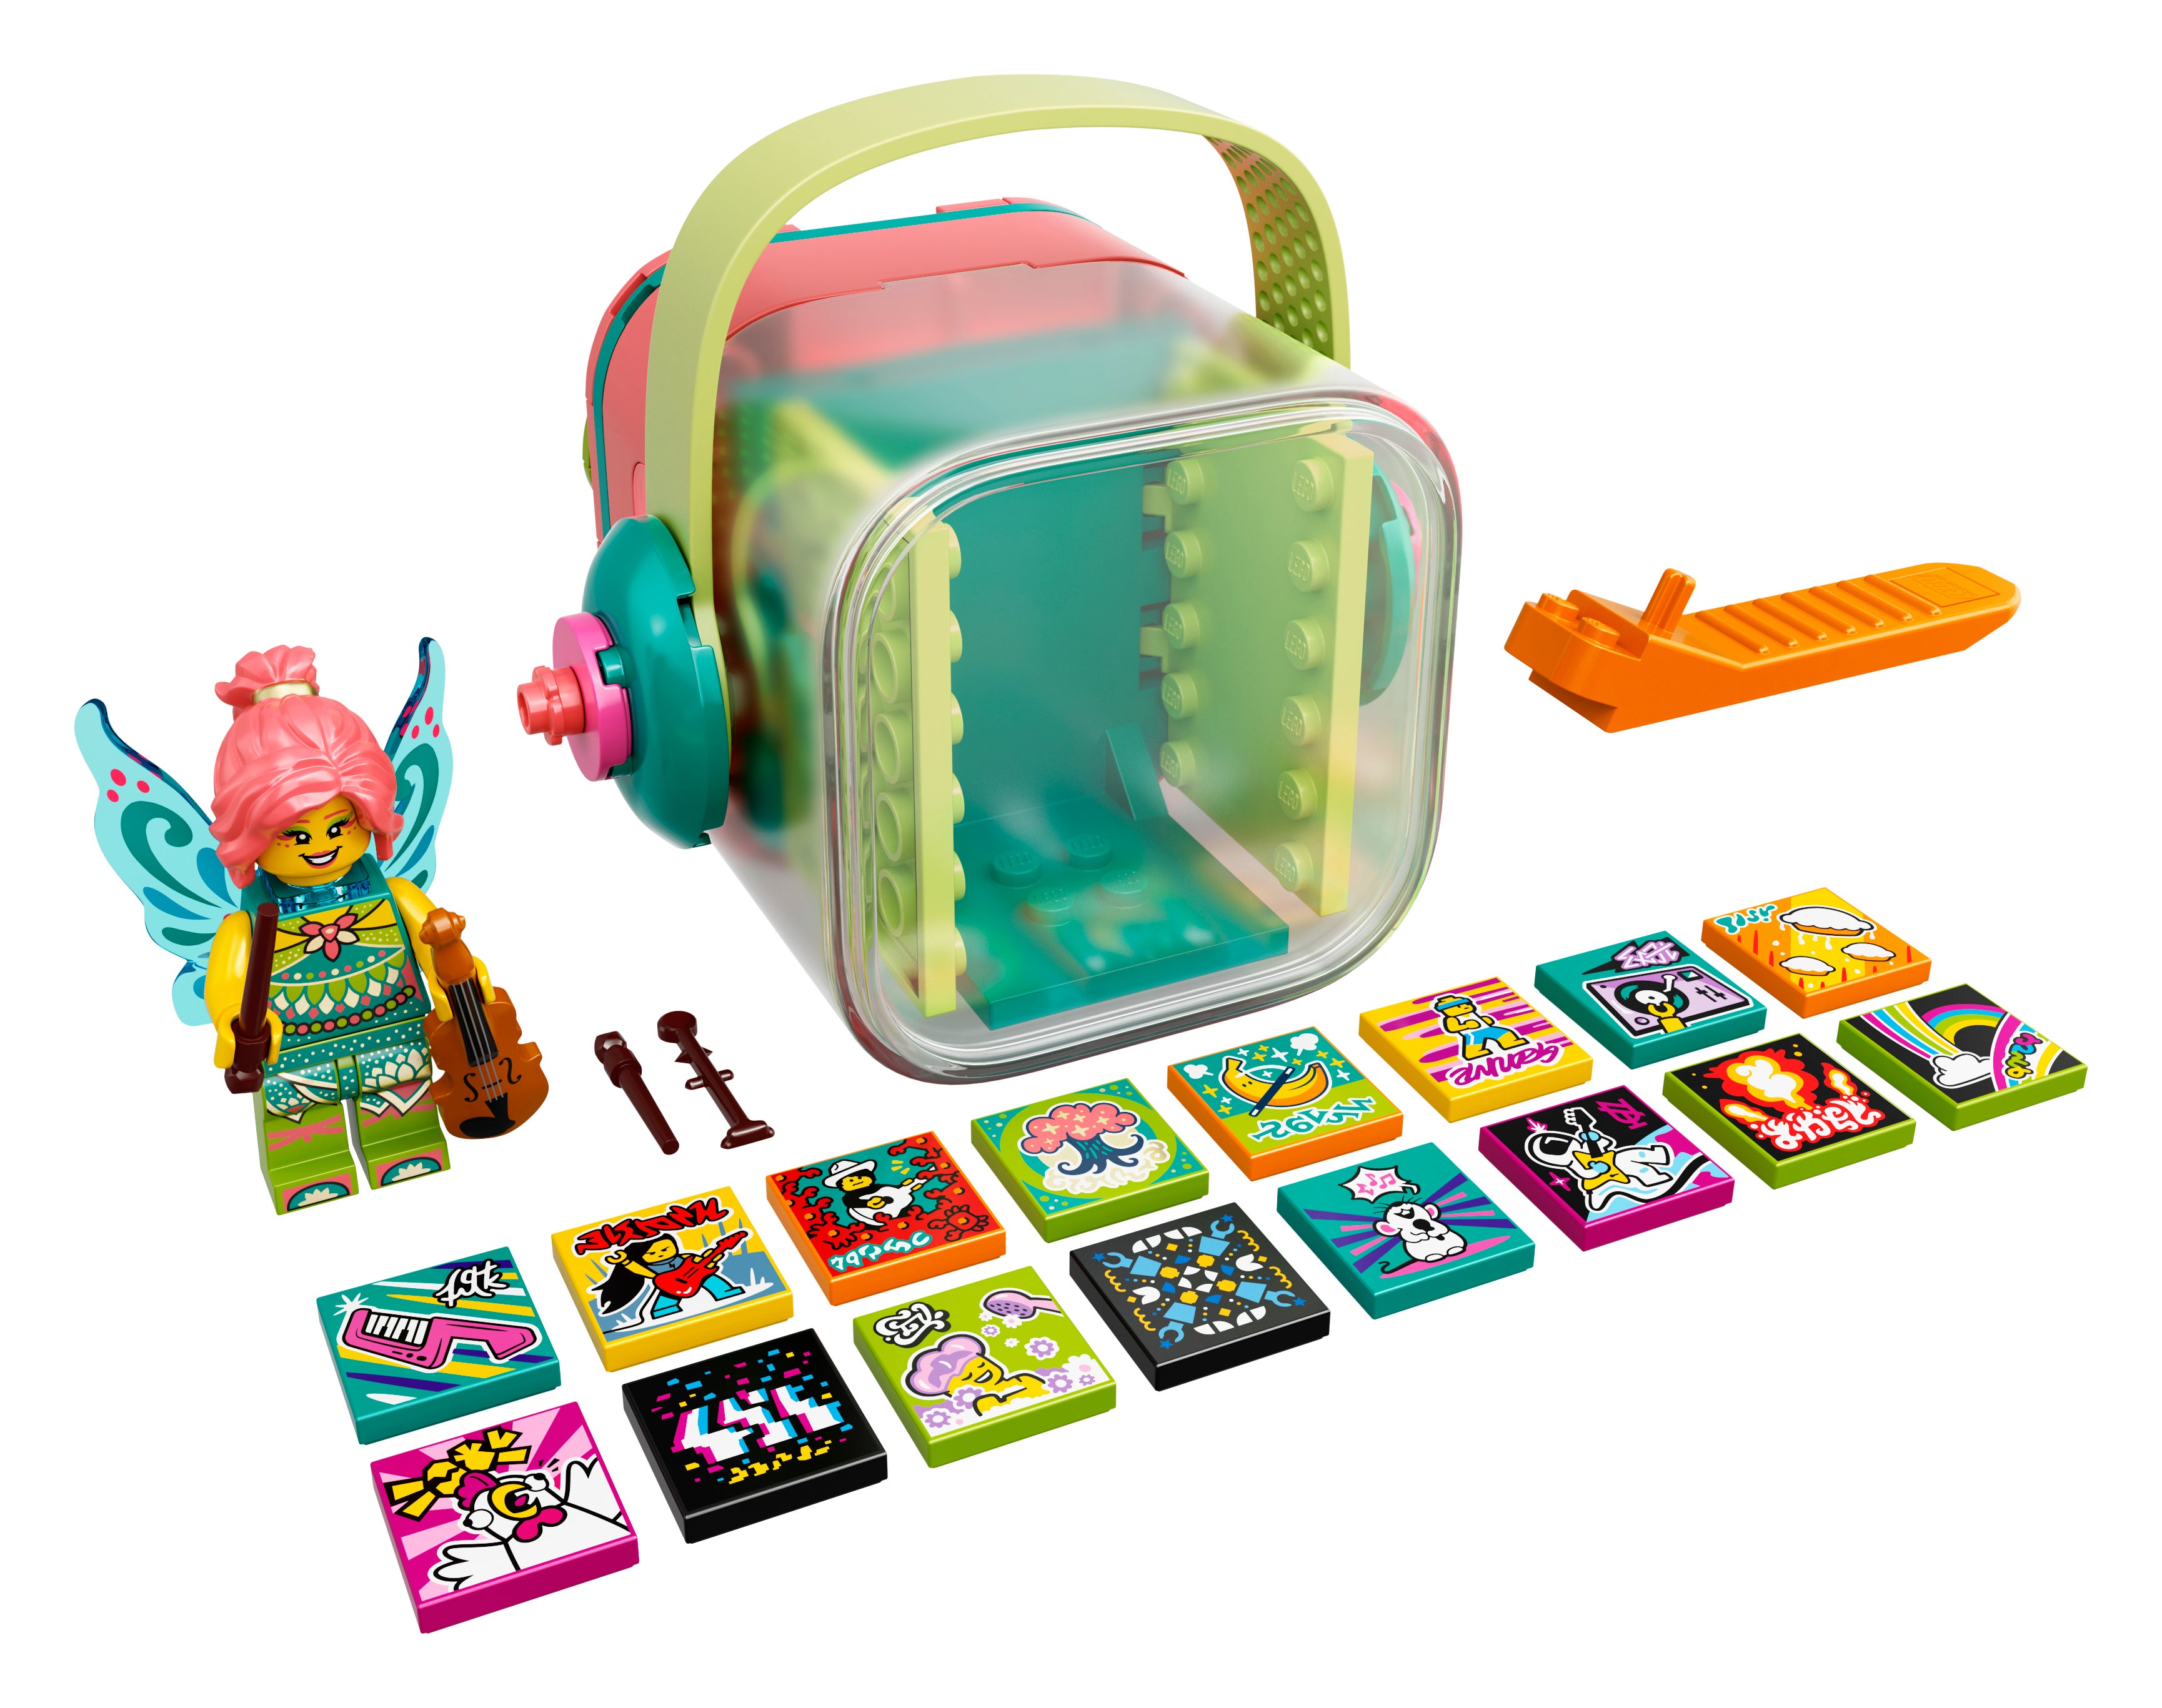 LEGO 43113 VIDIYO K-Pawp Concert Beatbox Music Video Maker Musik Spielzeug Set für Kinder mit AR App & 43110 VIDIYO Folk Fairy Beatbox Music Video Maker 